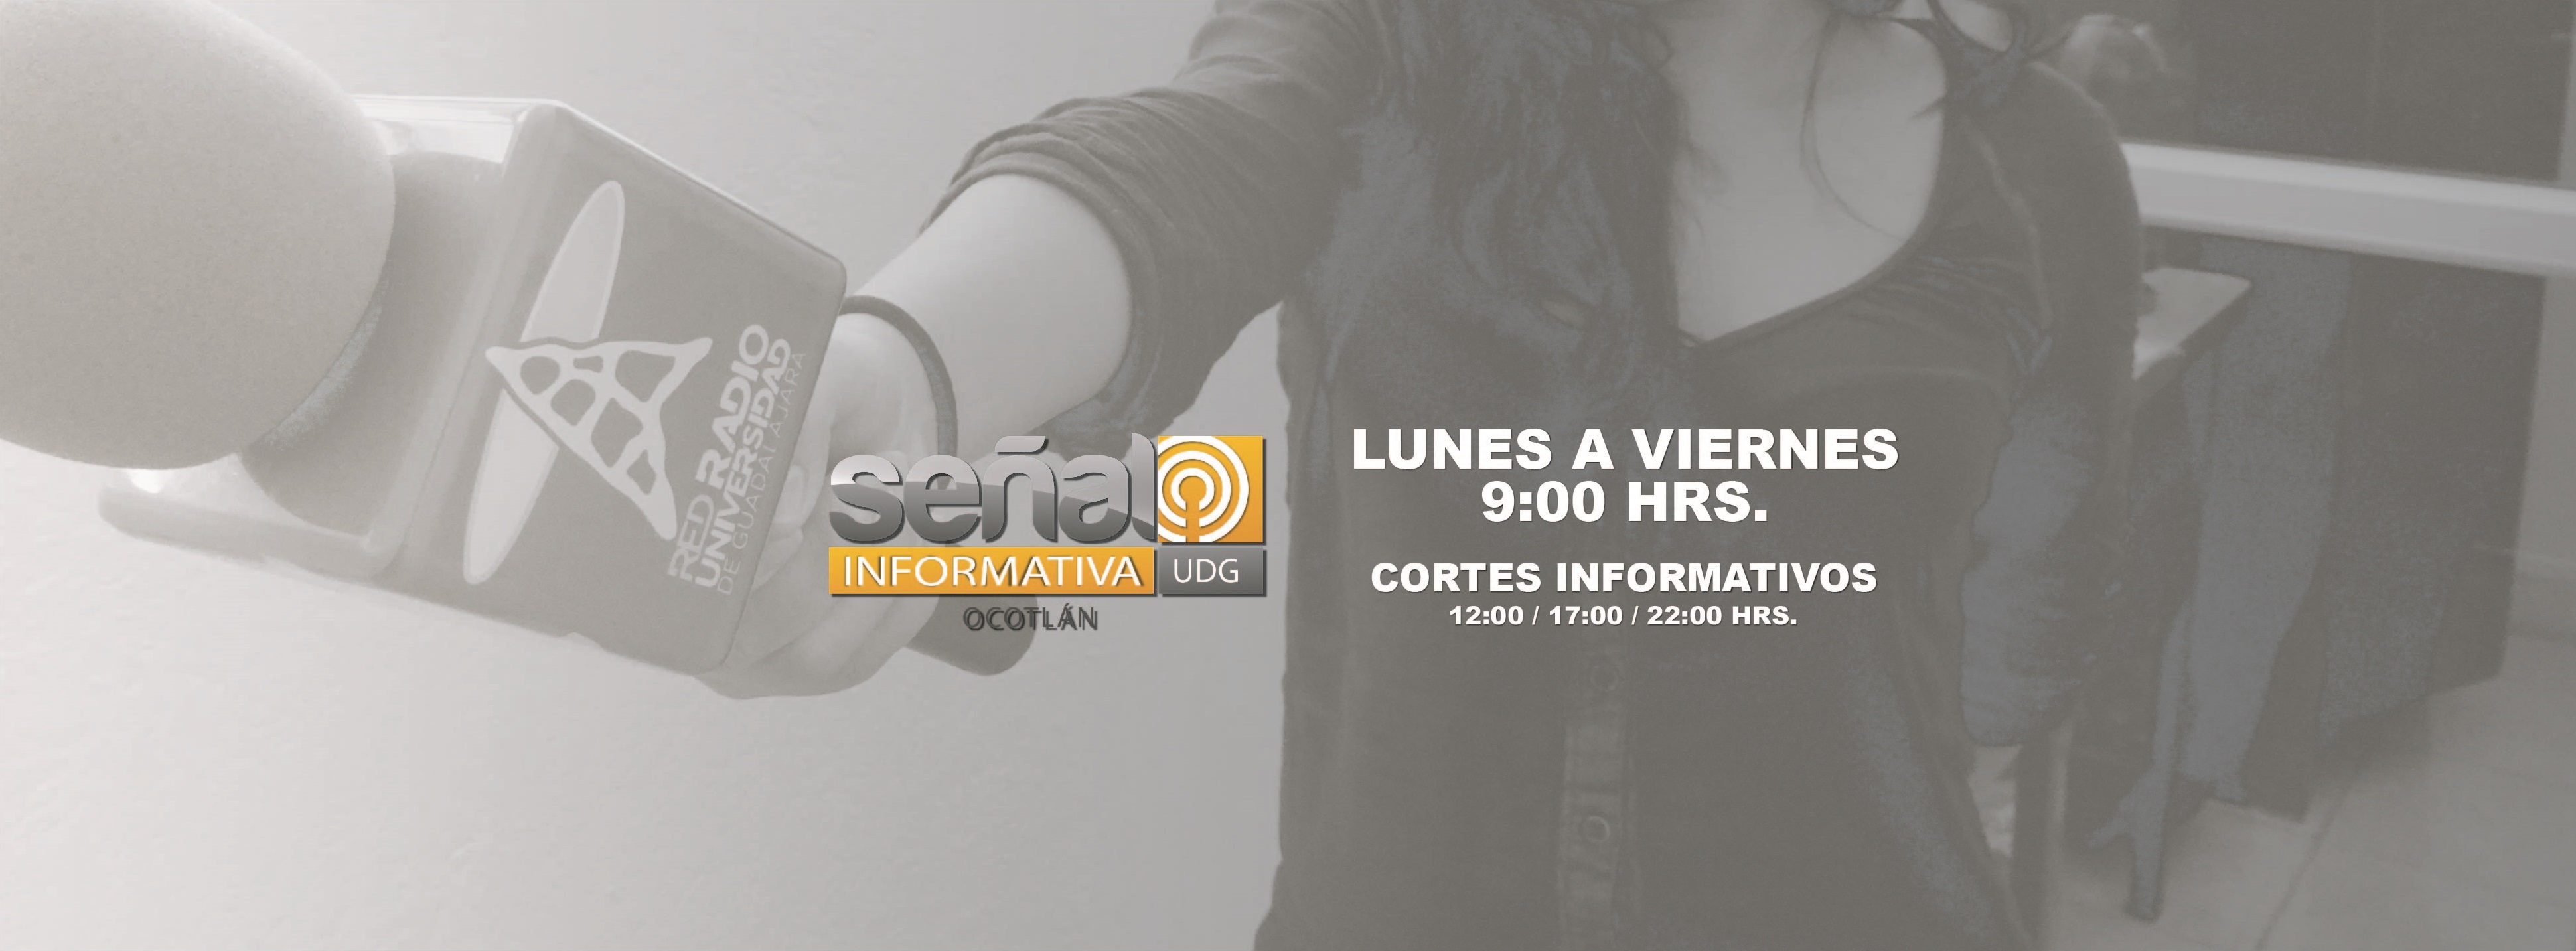 Señal Informativa Ocotlán | 27 de febrero 2019